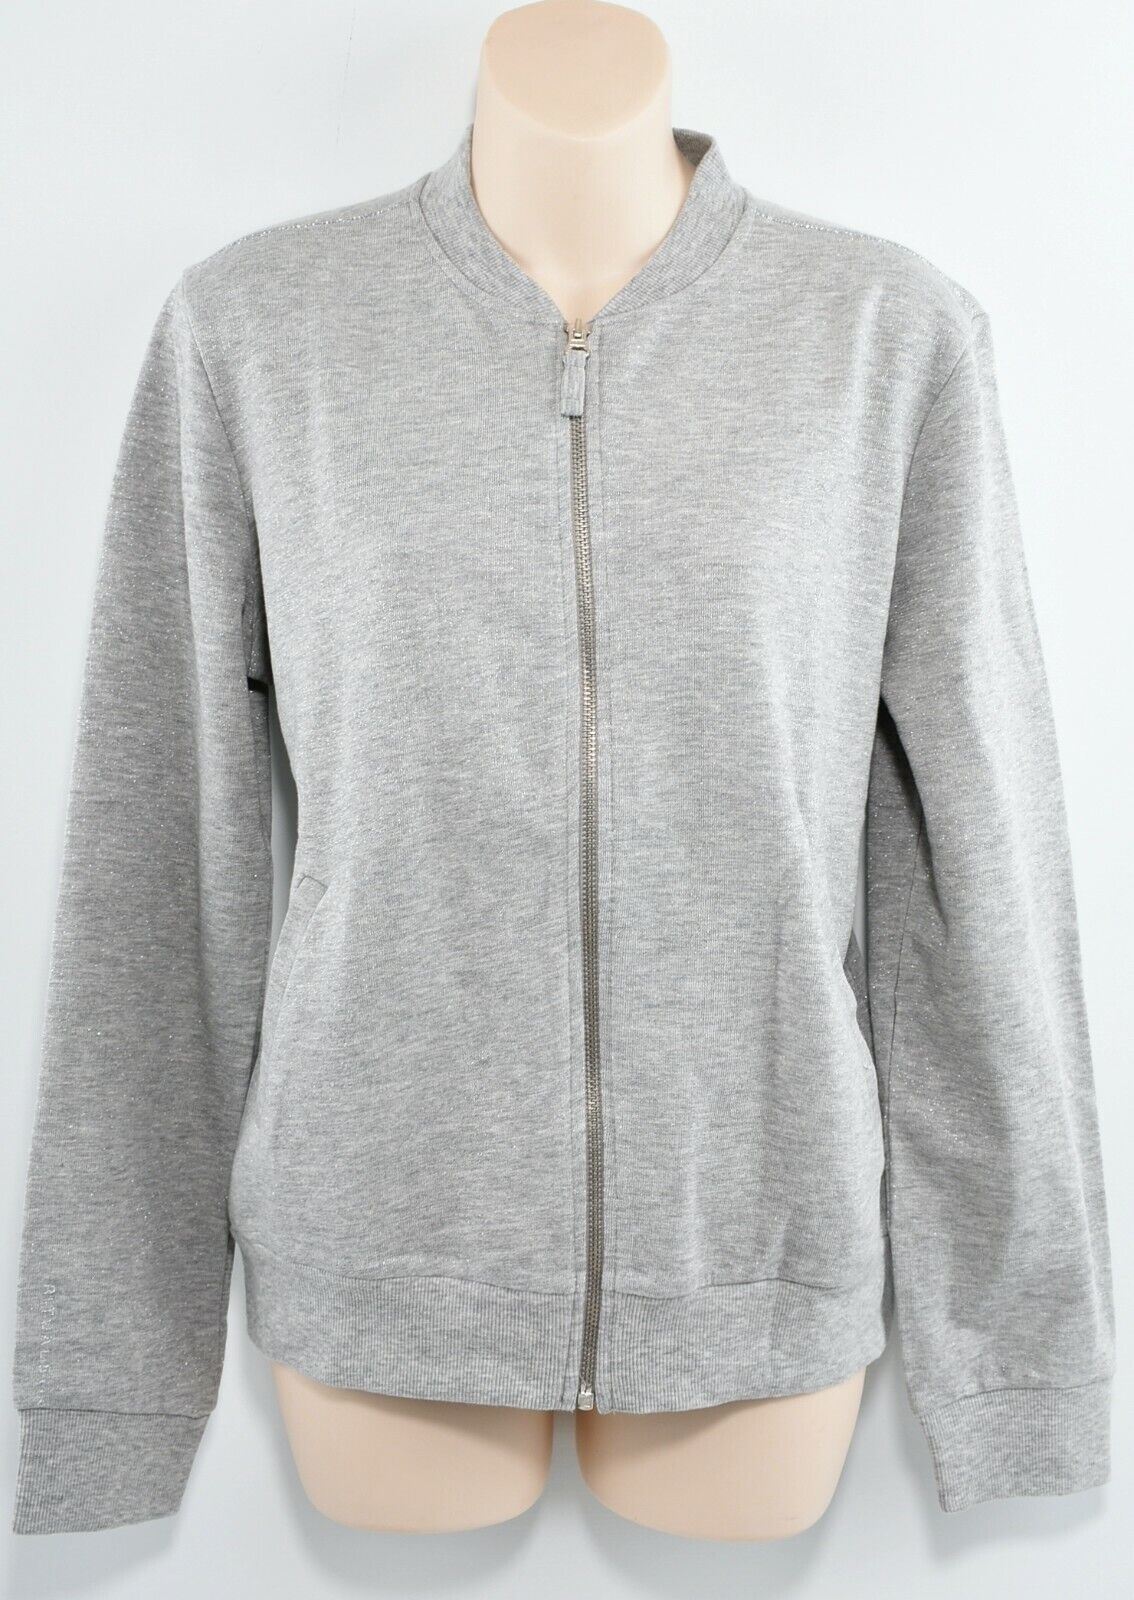 RITUALS Women's Grey Heather/Metallic Zip Sweatshirt Jacket, size L